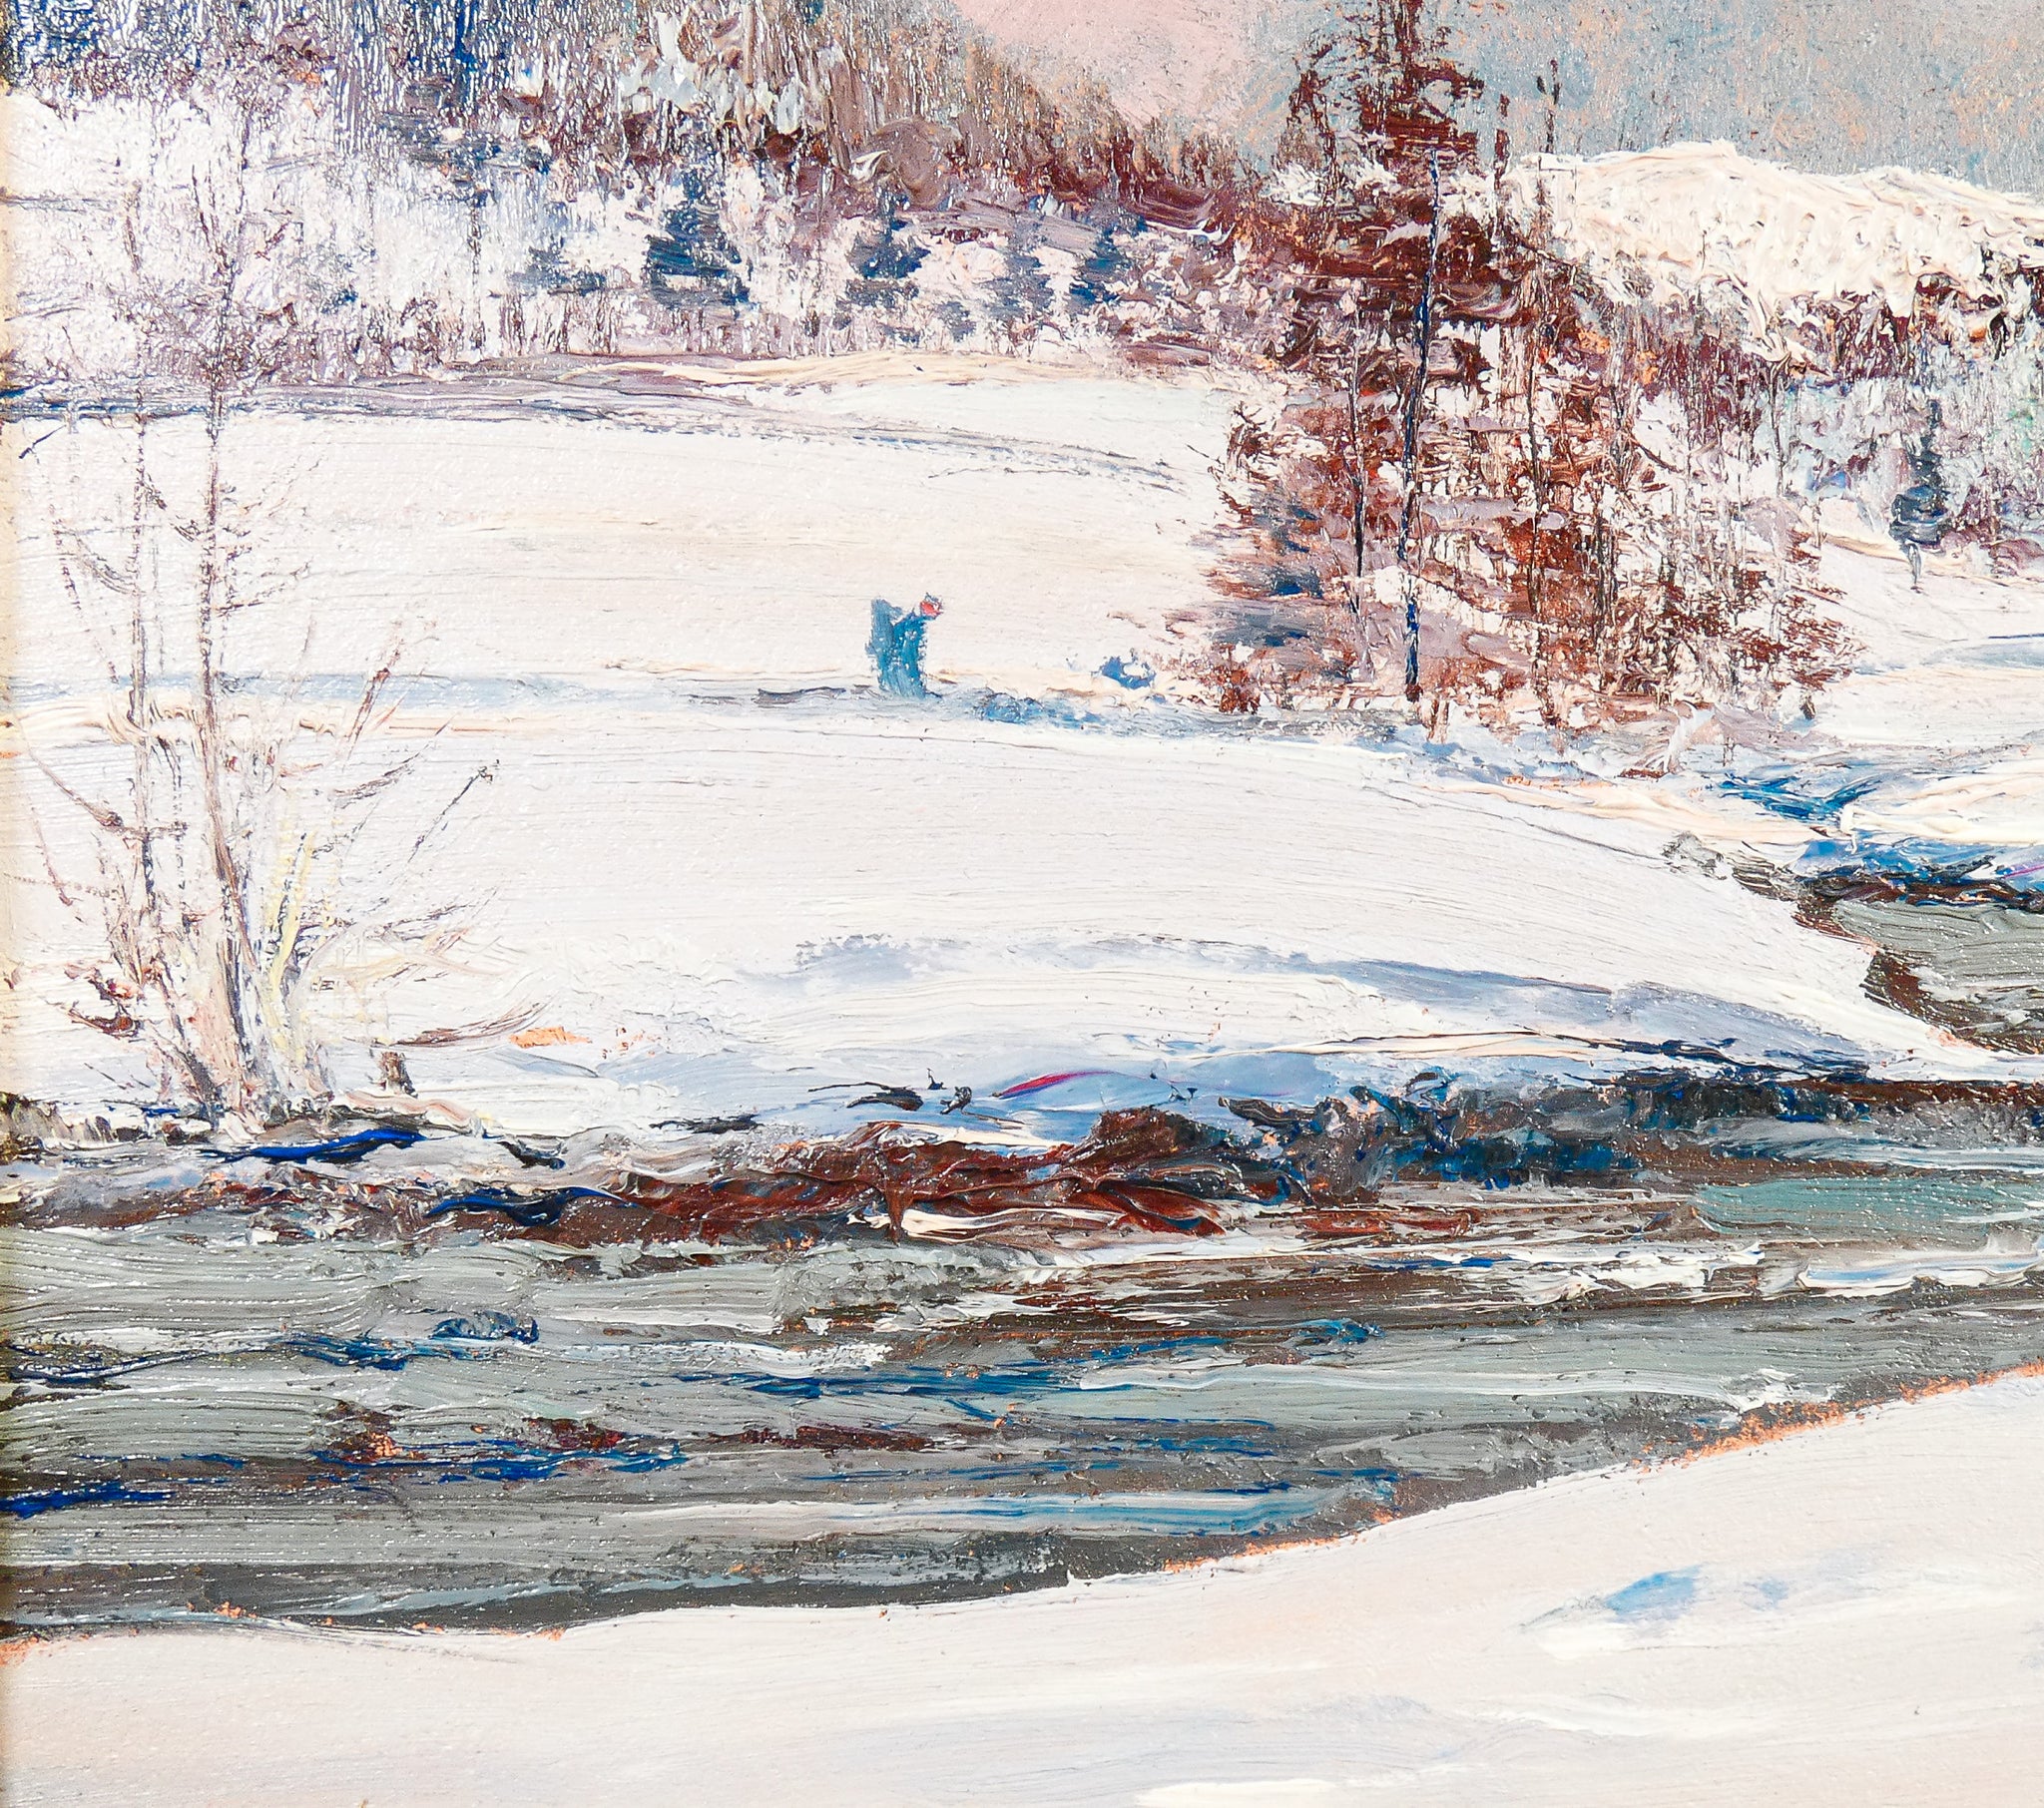 quadro firmato sergio manfredi 1978 val di susa paesaggio neve dipinto olio